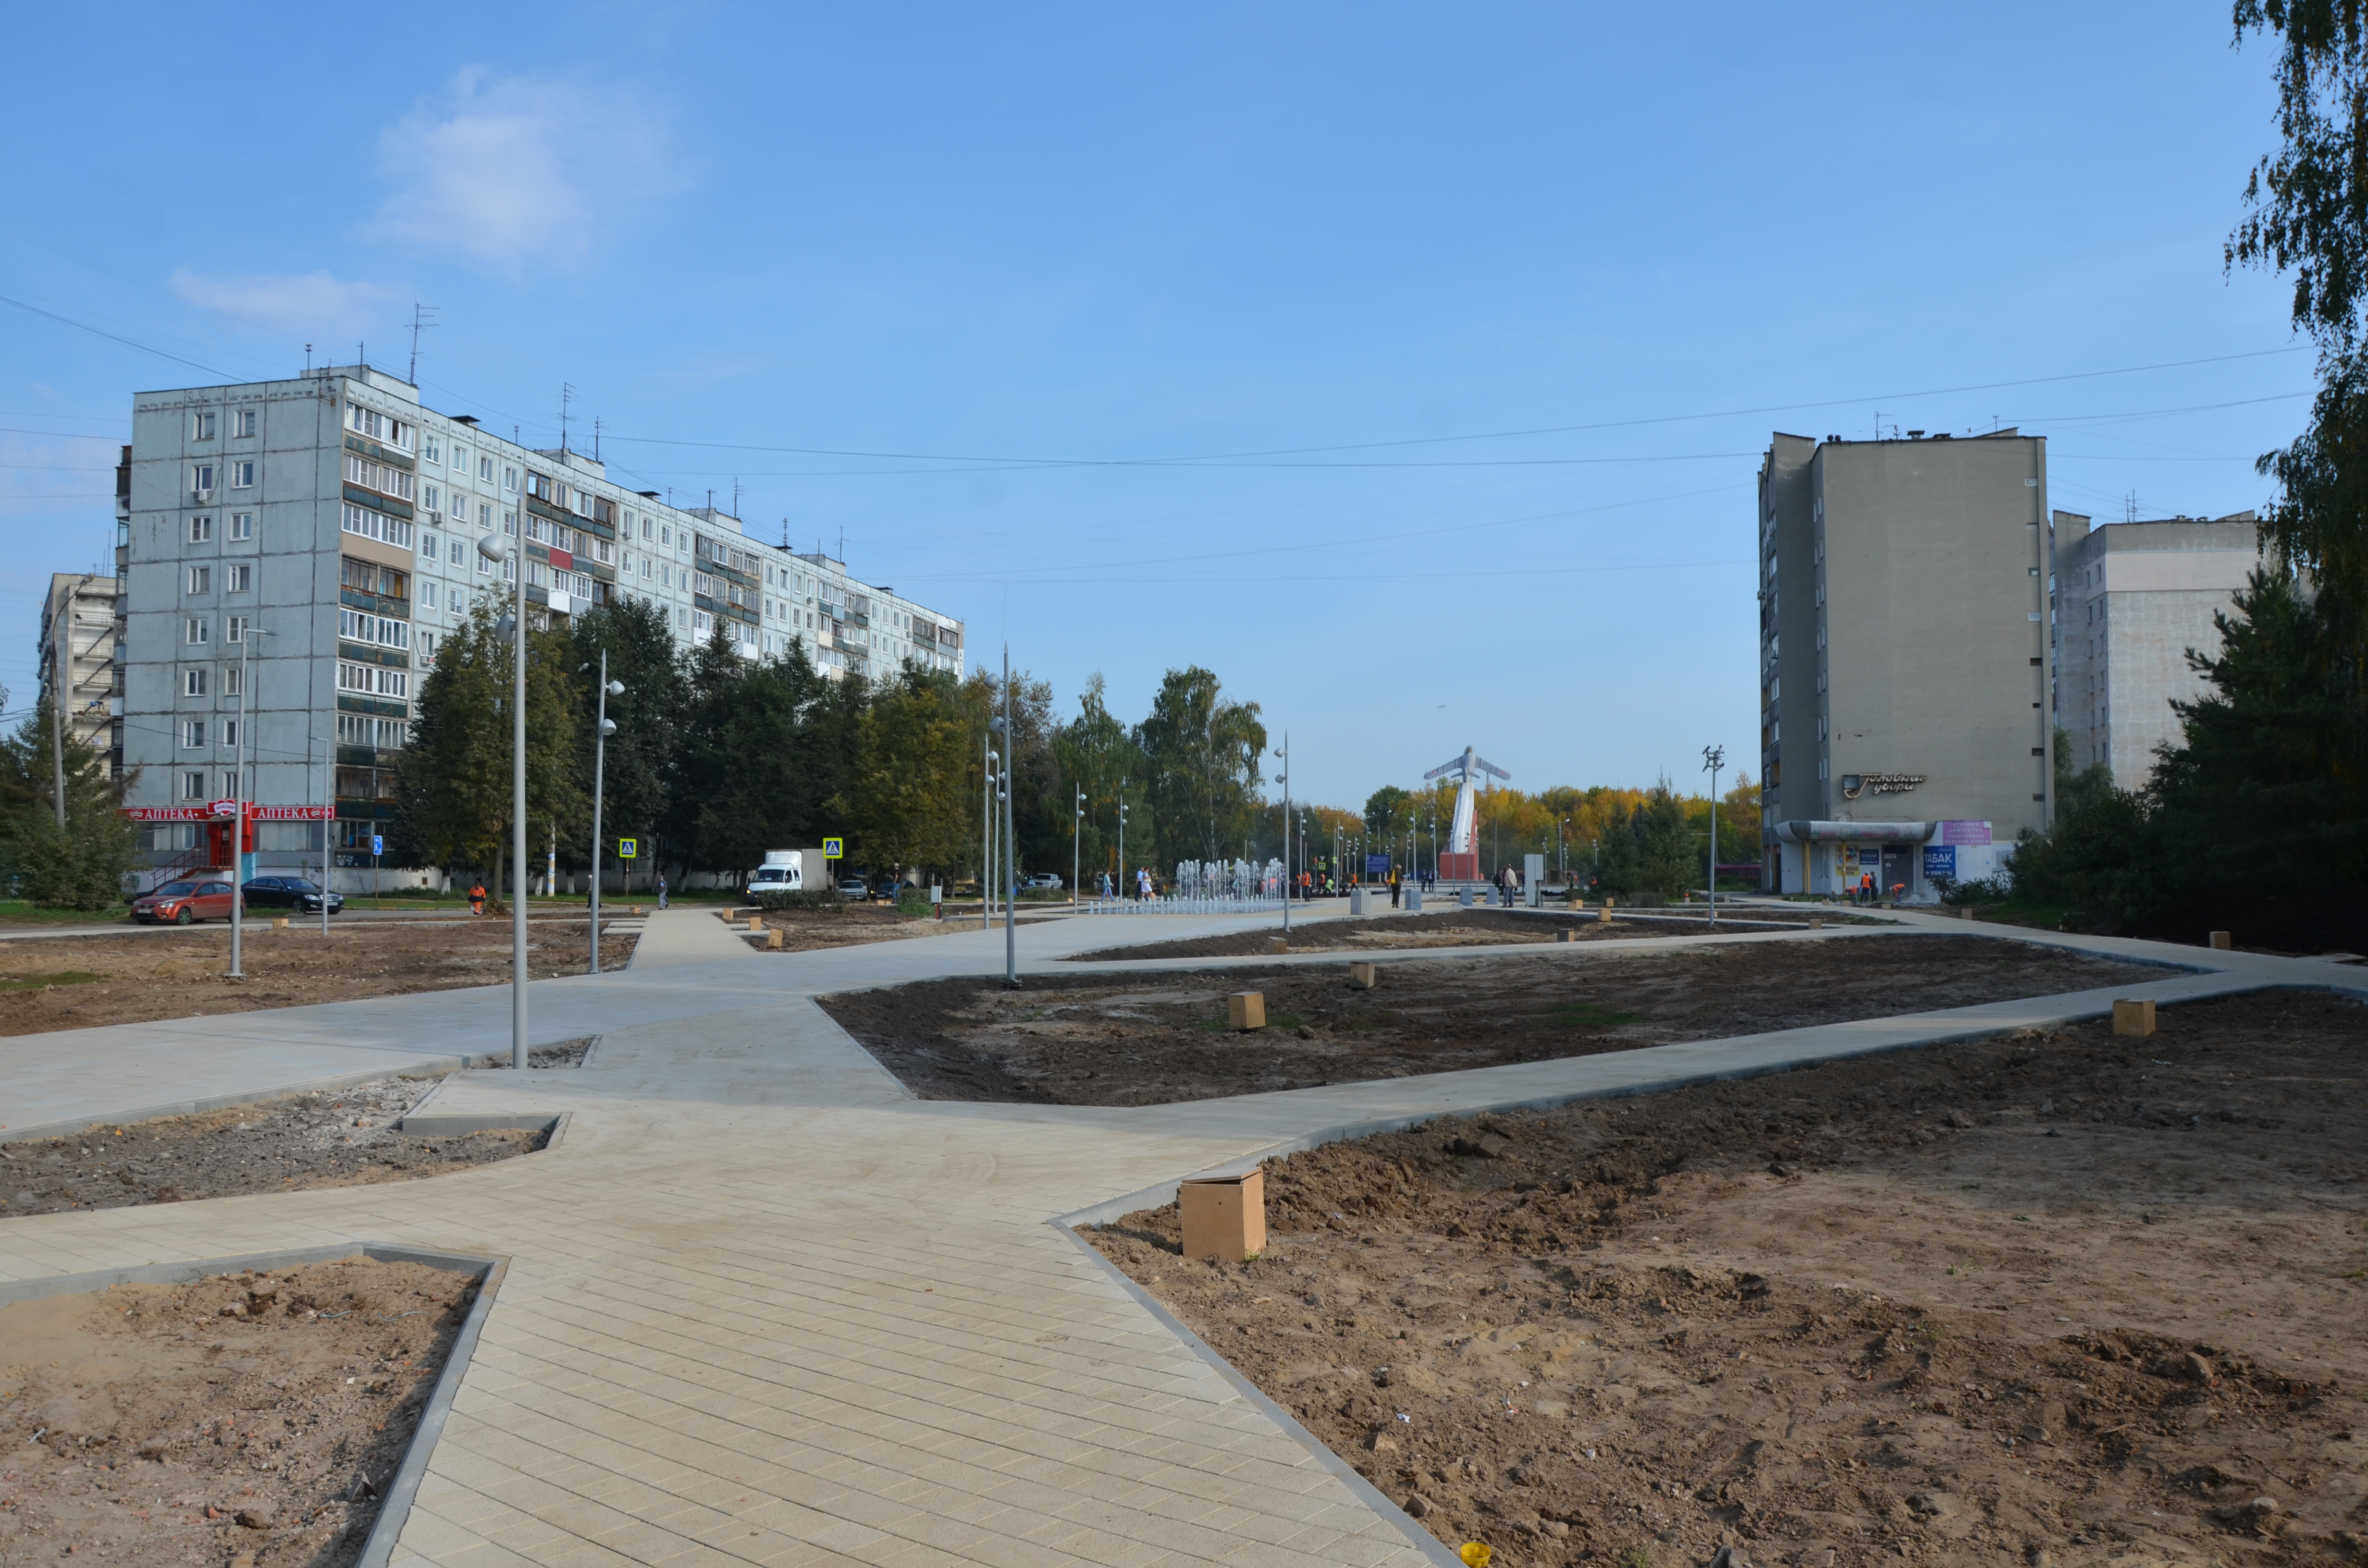 Как готовится к открытию благоустроенный сквер Авиастроителей в Нижнем Новгороде 